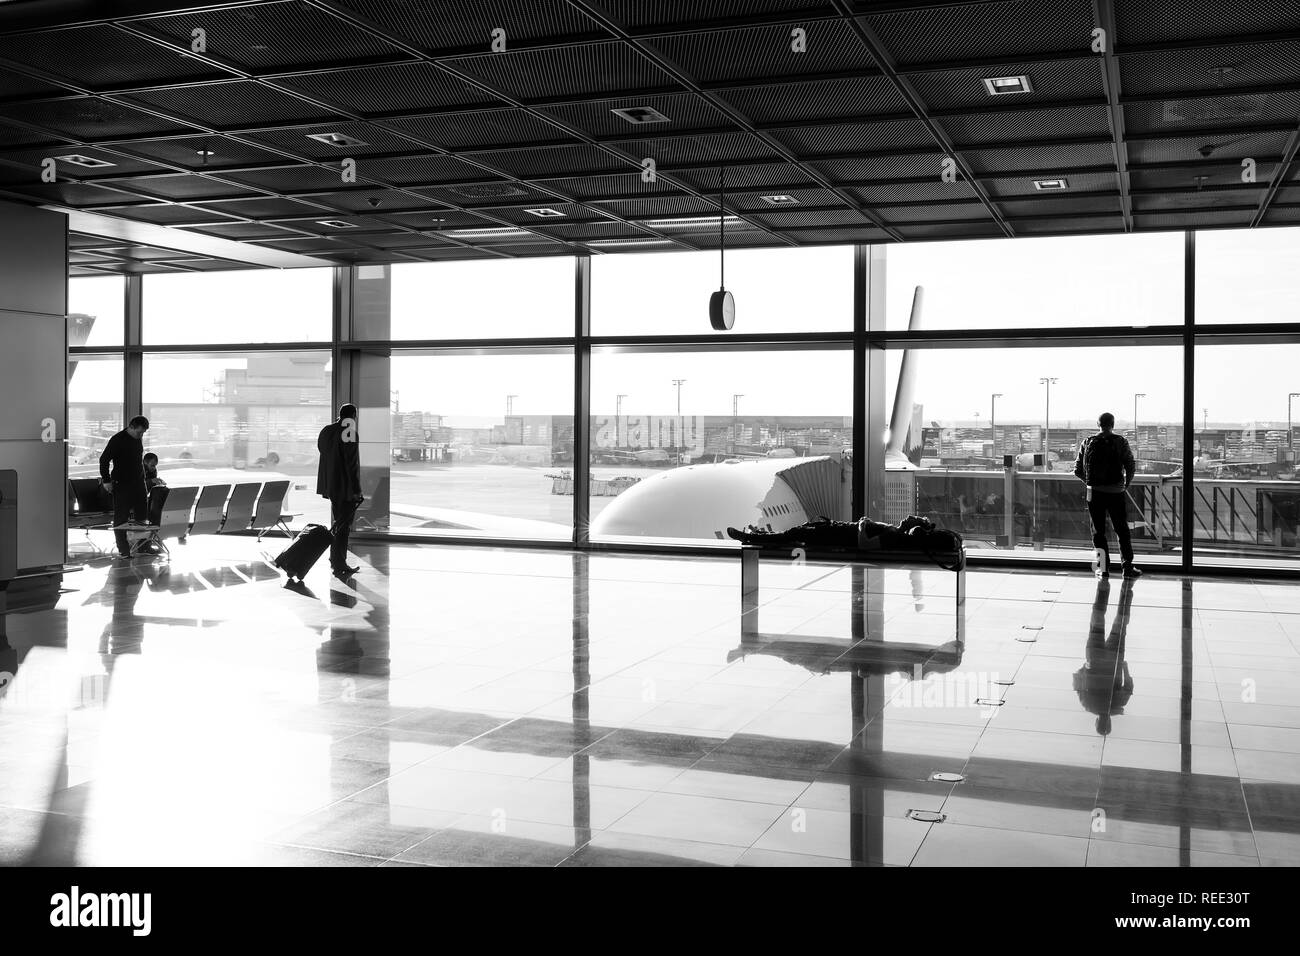 Frankfurt am Main, Deutschland - 11. Oktober 2015: touristische Passagiere mit Koffer, Gepäck in der Lounge Halle. Die Menschen warten für Flug im Flughafen am grossen Fenster Glas. Fernweh, Urlaub, Reise. Stockfoto